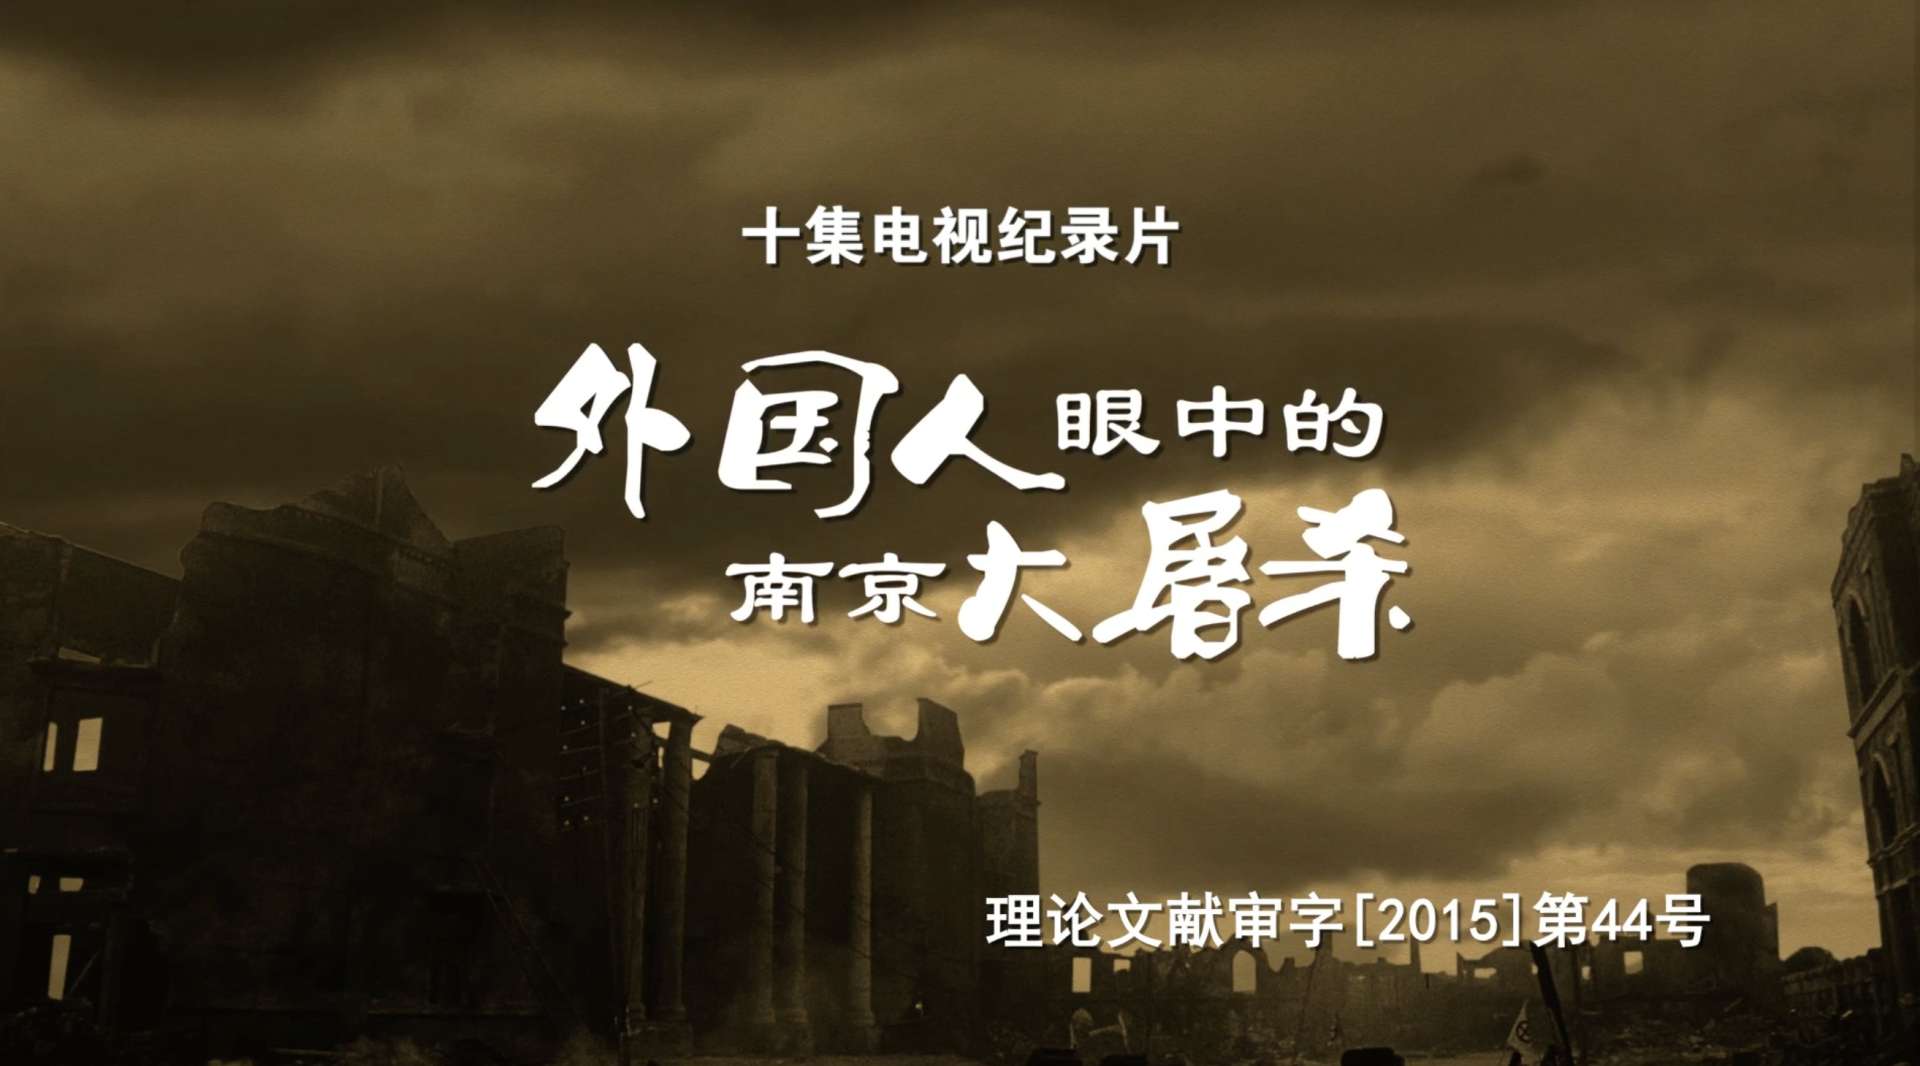 大型纪录片《外国人眼中的南京大屠杀》国内版官方宣传片